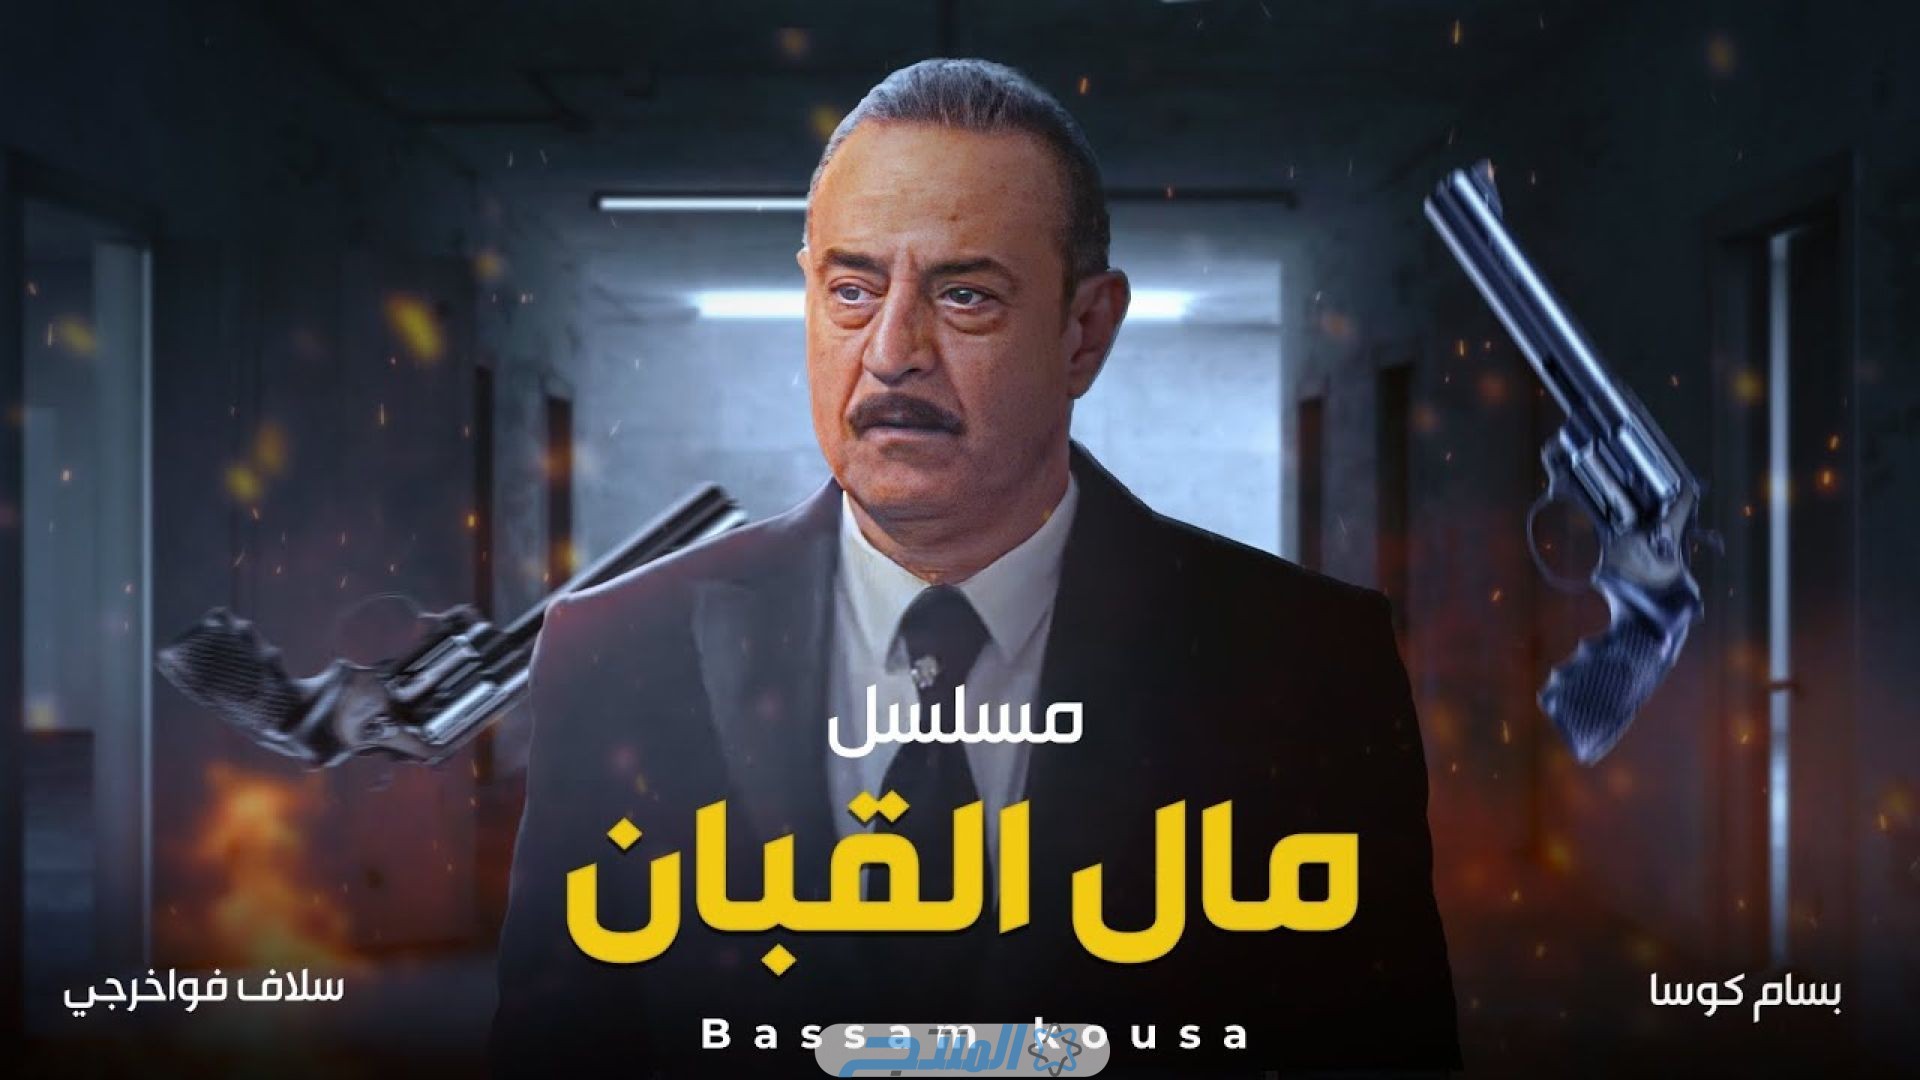 مشاهدة مسلسل مال القبان الحلقـة 3 الثالثة